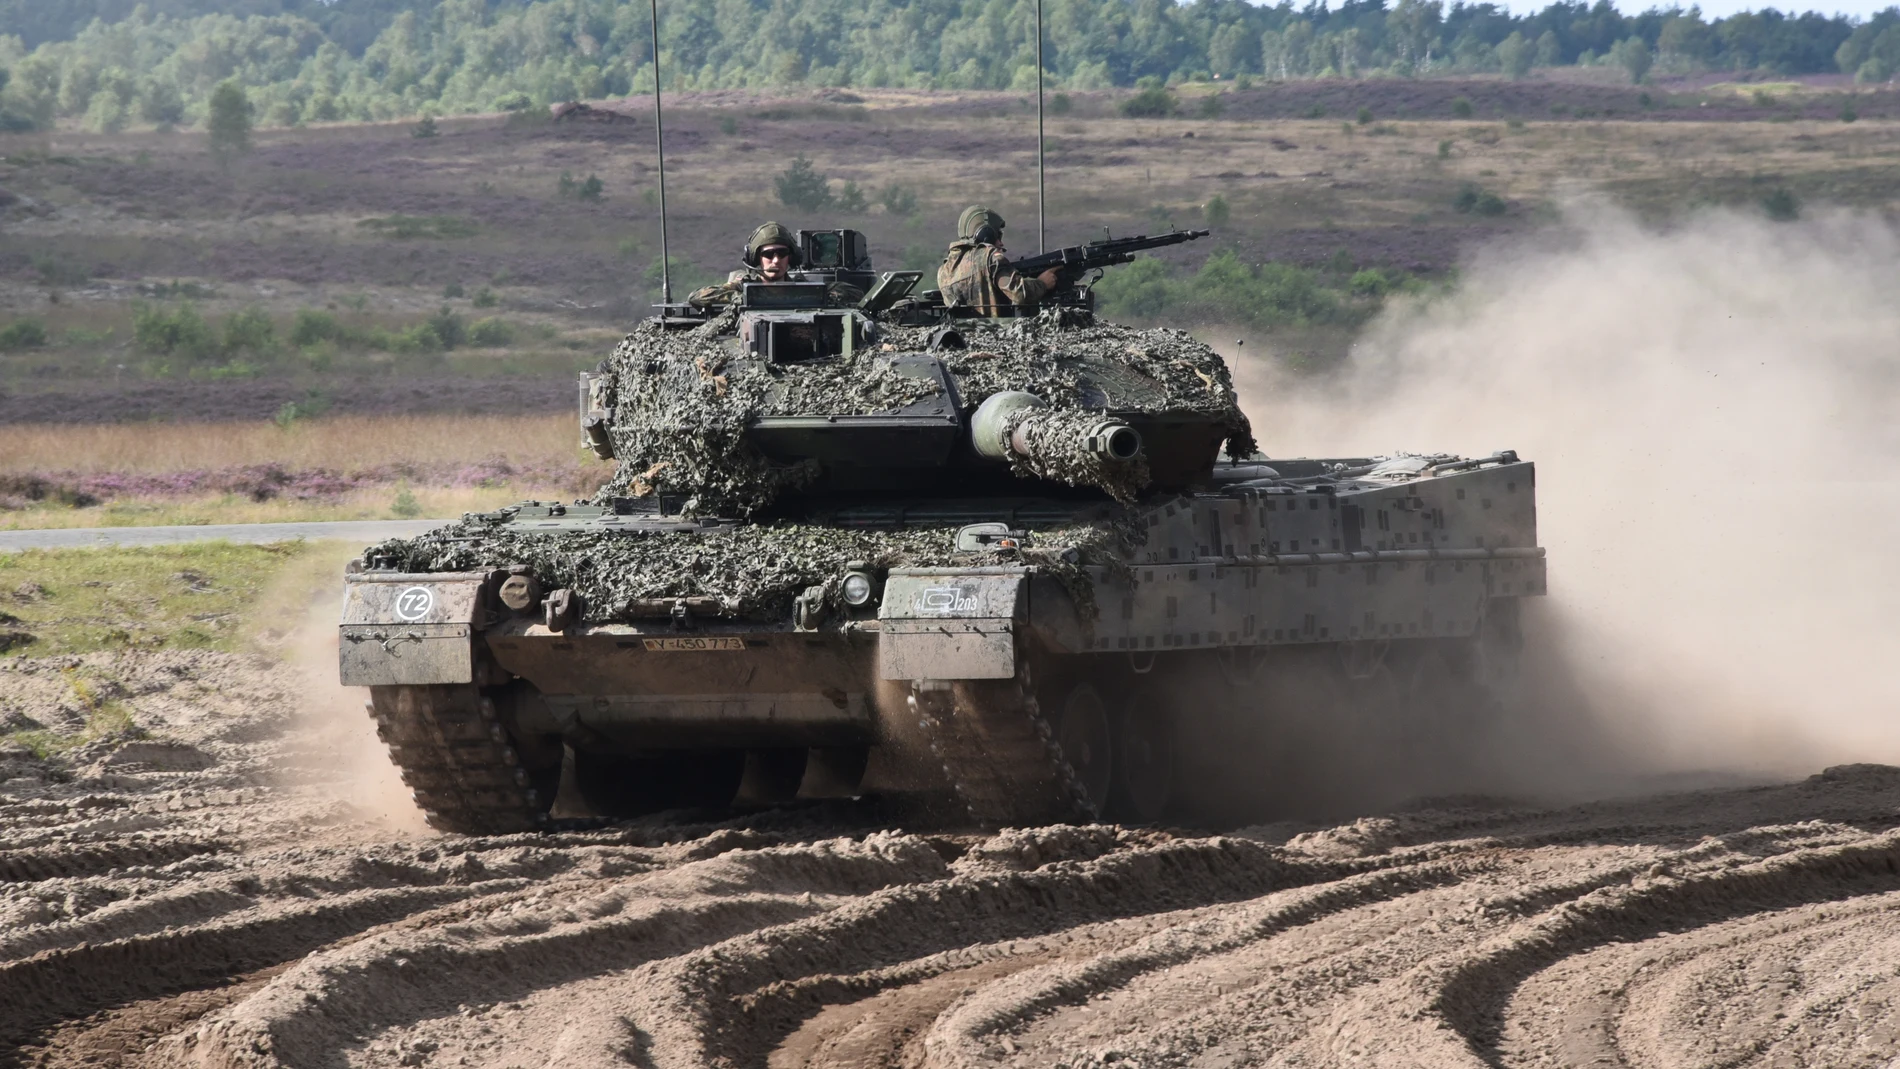 Imagen del Leopard 2A7+, la última versión disponible de este carro de combate de KMW